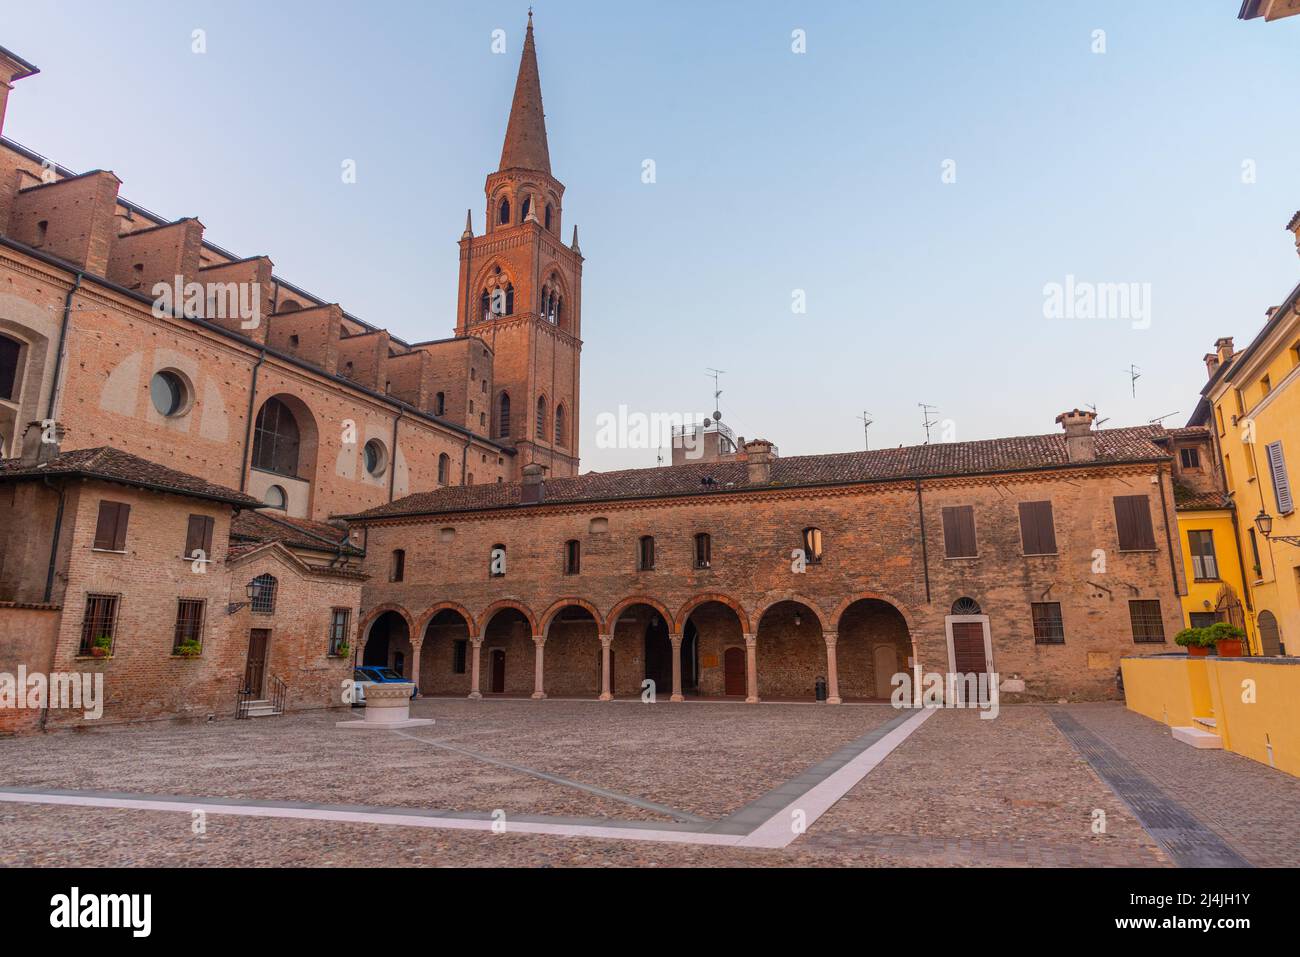 Basilica di Sant'Andrea in Mantua, Italy. Stock Photo